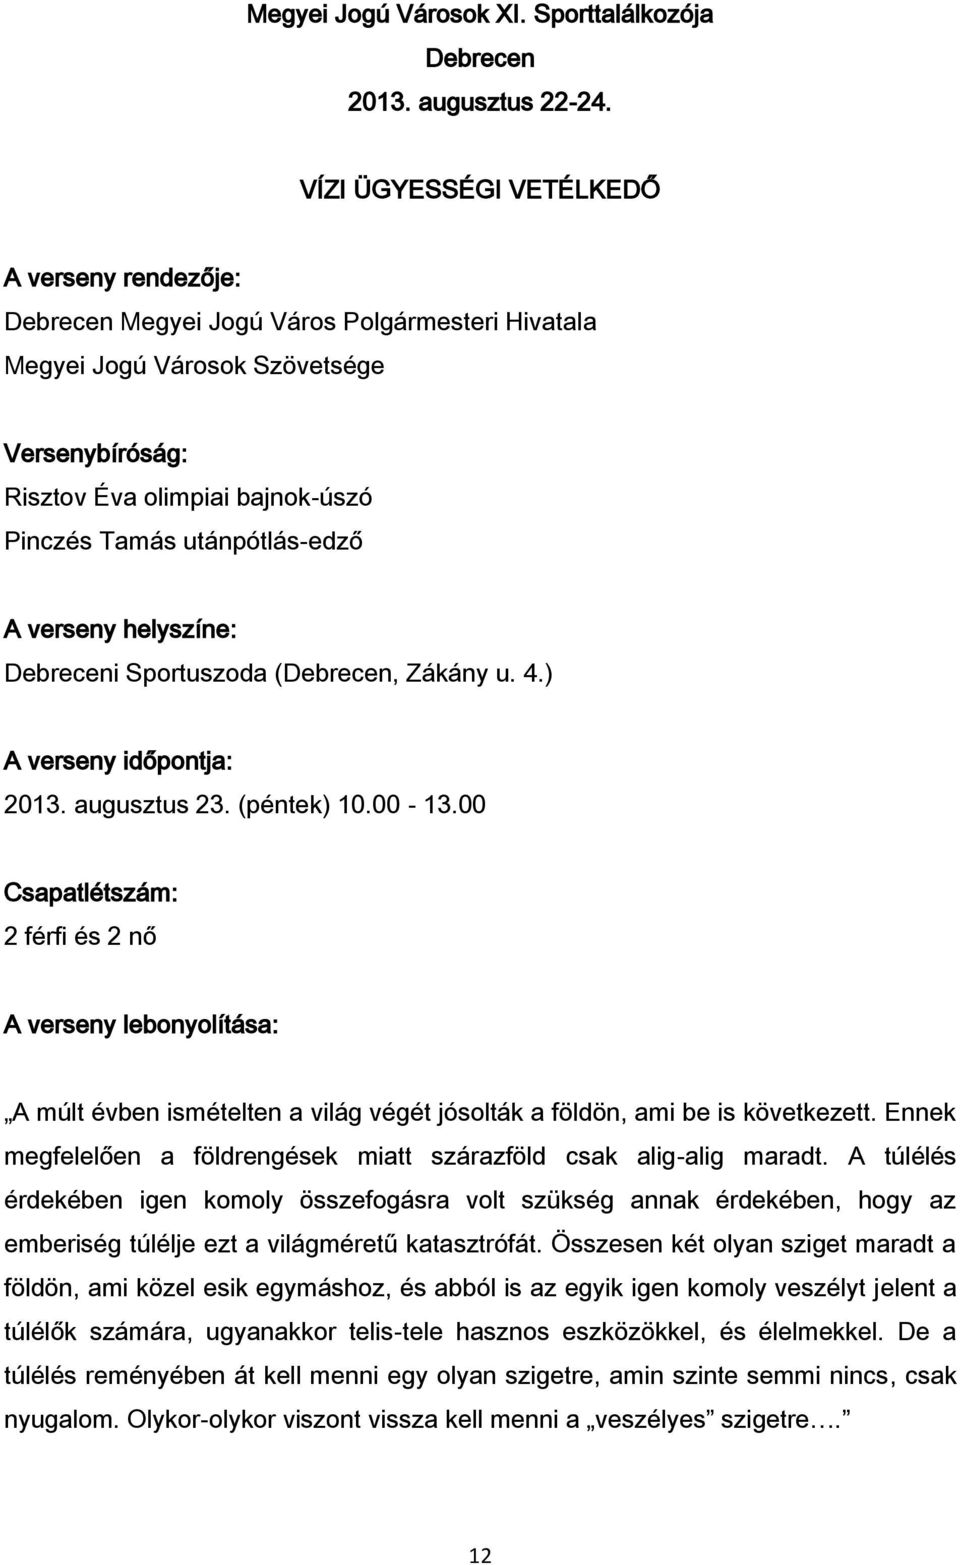 utánpótlás-edző A verseny helyszíne: Debreceni Sportuszoda (Debrecen, Zákány u. 4.) A verseny időpontja: 2013. augusztus 23. (péntek) 10.00-13.